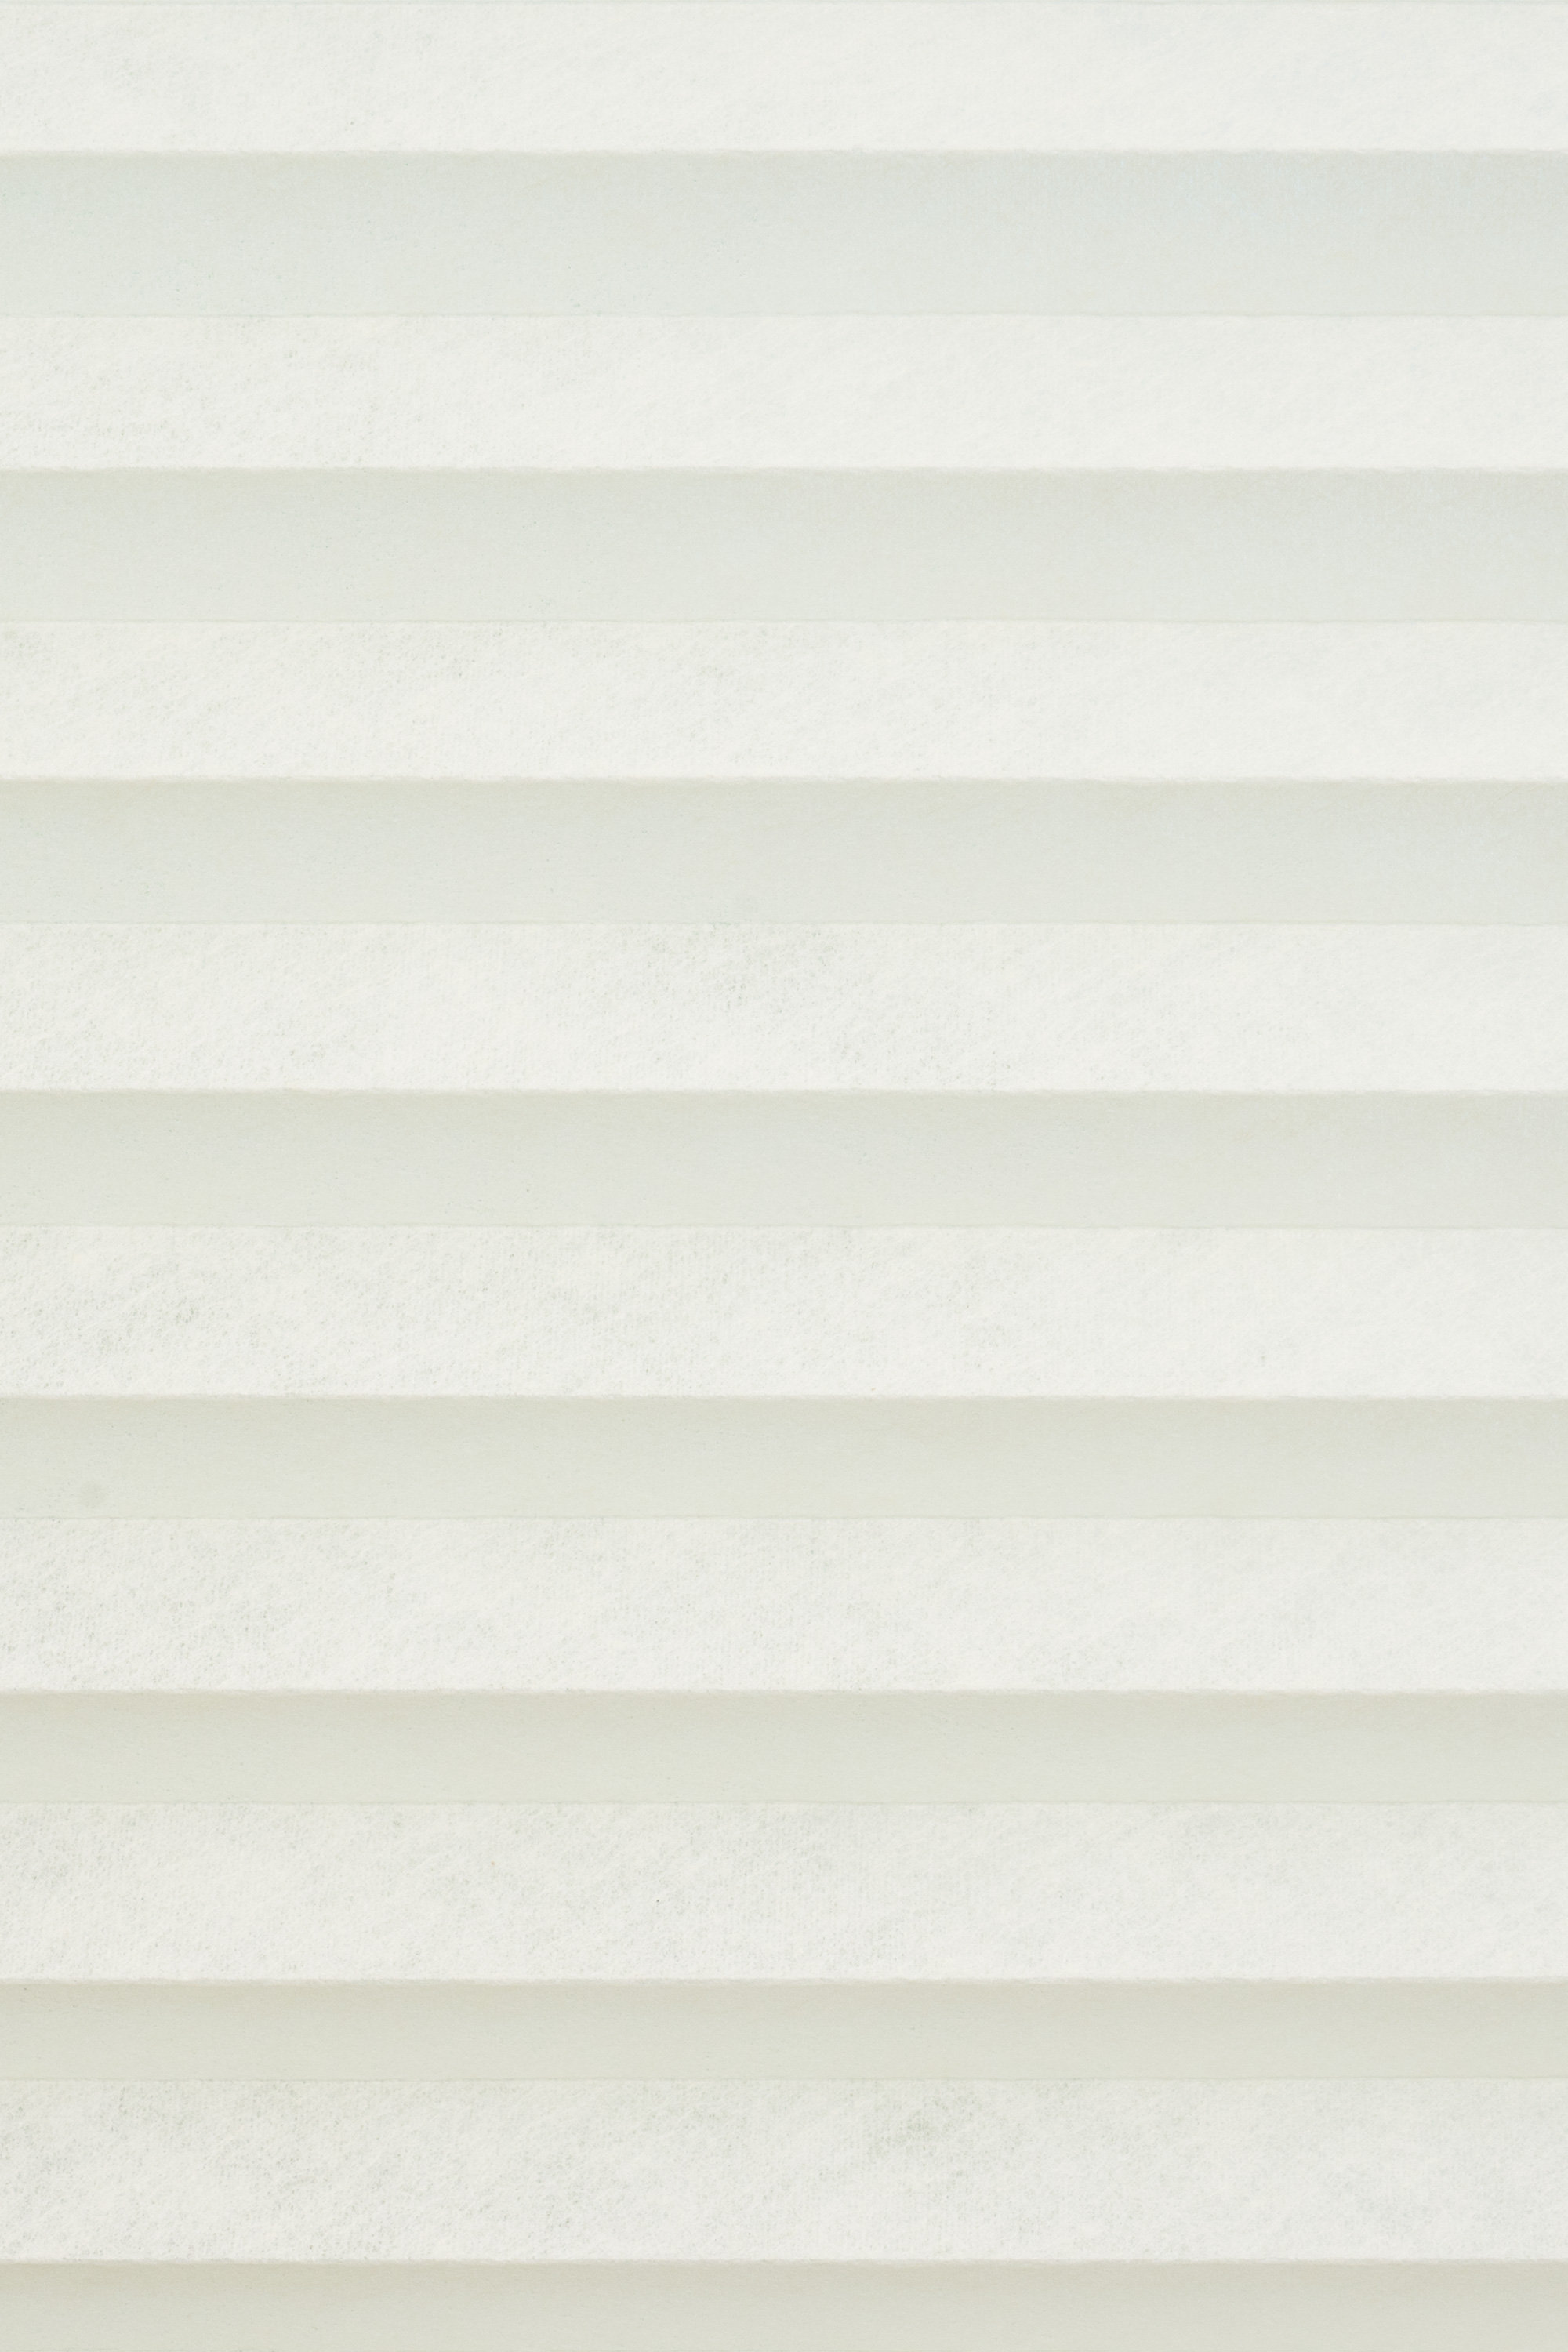 Plissee Klemmfix ohne Bohren 55x160cm Weiß Plissees für Fenster innen ohne  Bohren zum Klemmen Jalousie Blickdicht Sichtschutz Plisee Rollo ohne Bohren